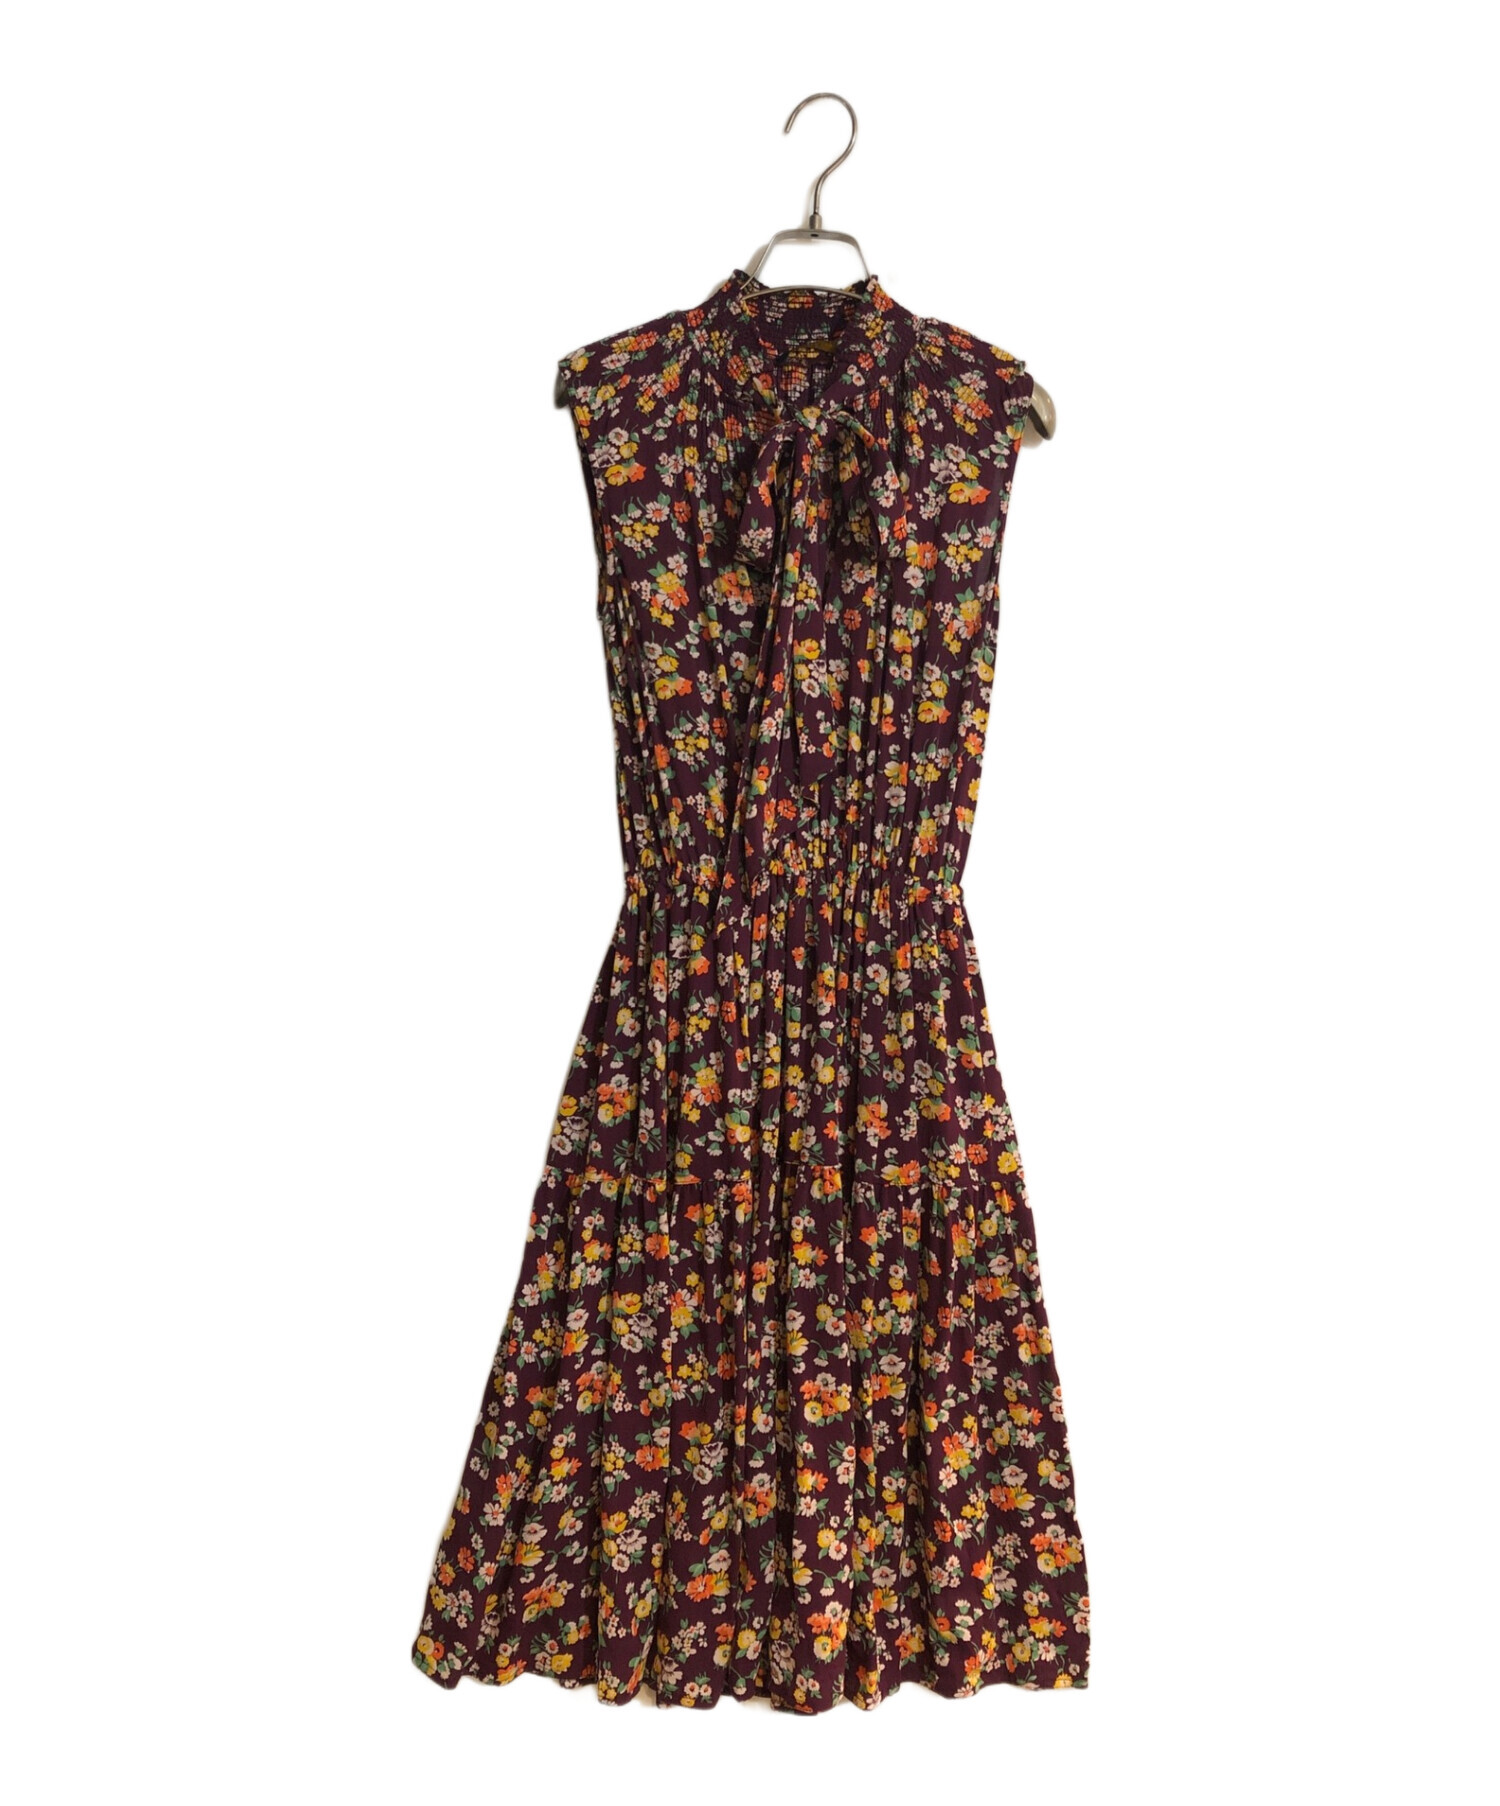 POLO RALPH LAUREN (ポロ・ラルフローレン) Tie Neck Floral Silk Dress/タイネックフローラルシルクドレス  パープル サイズ:XS